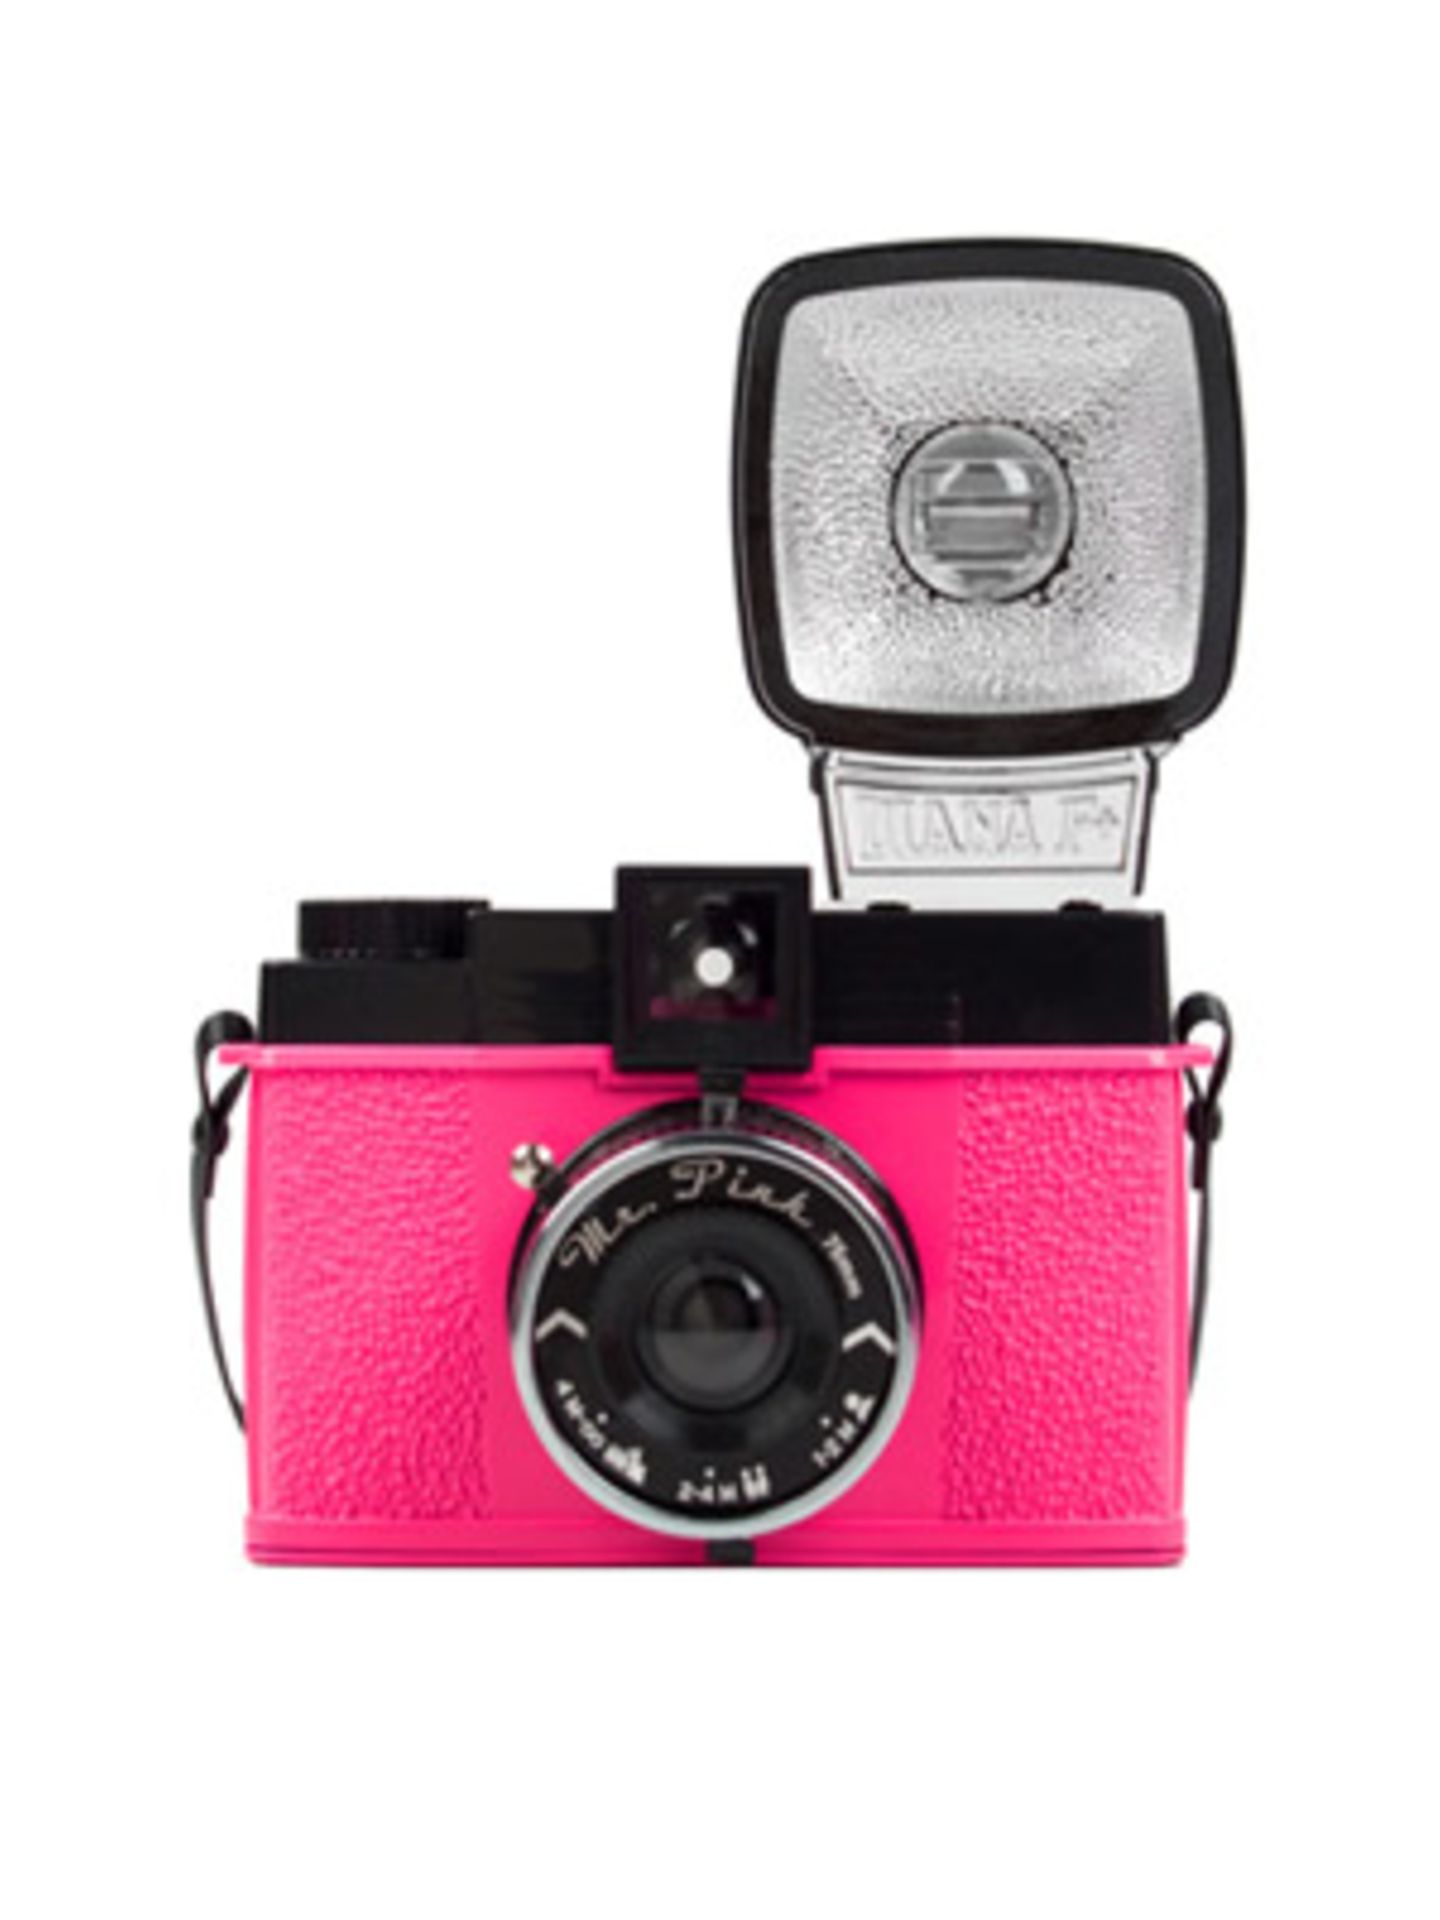 Kamera für Liebhaber (und Tussis): Die Lomo-Kamera "Mr. Pink Diana F" macht großartige Urlaubsfotos im Retro-Look. Über www.fredflare.com, um 80 Euro.